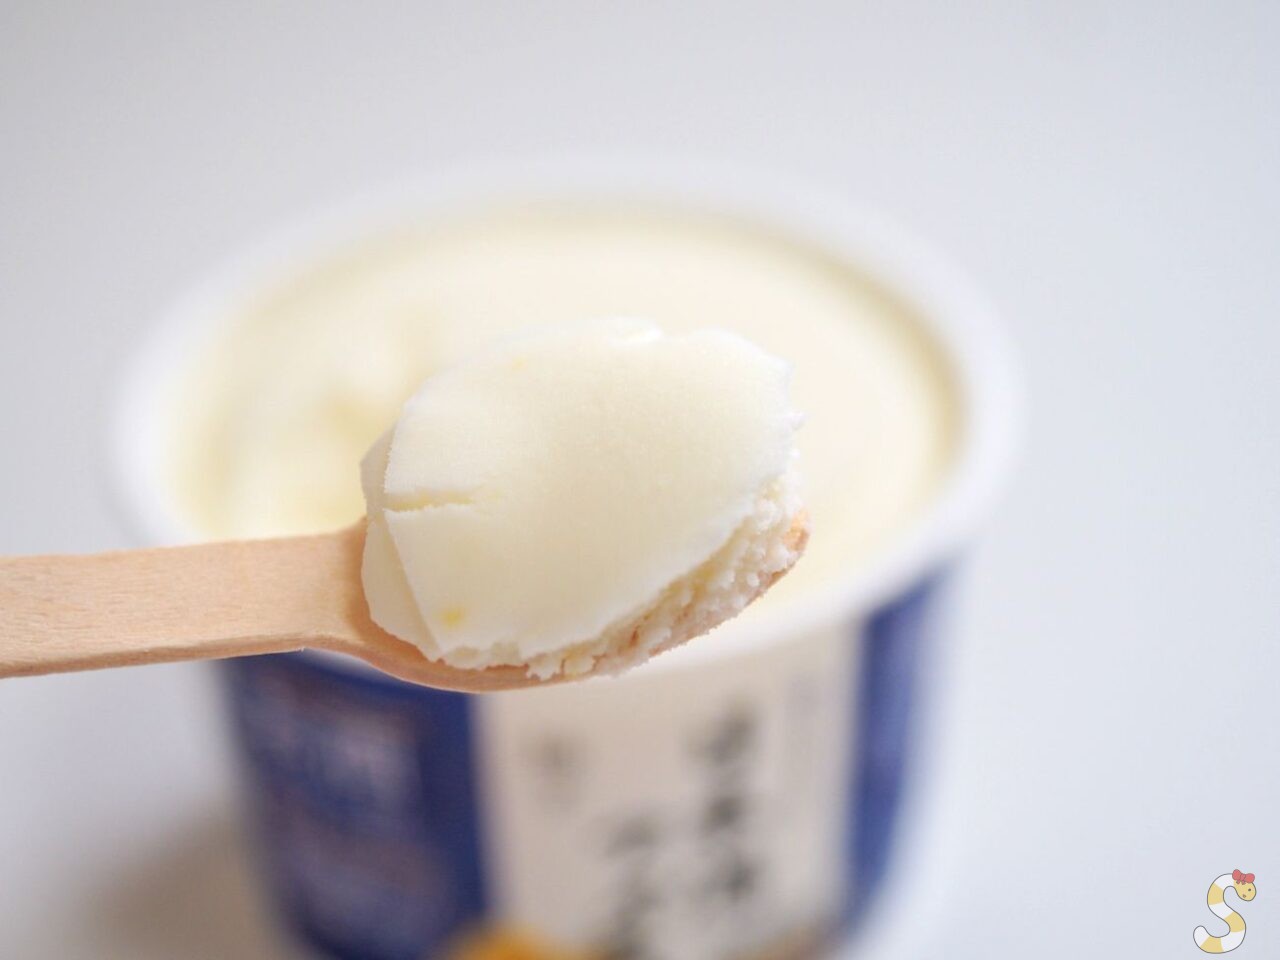 【長野県初上陸】日本酒アイスクリーム専門店『SAKEICE（サケアイス）』が「酒のスーパータカぎ」の6店舗内で常設販売をスタート